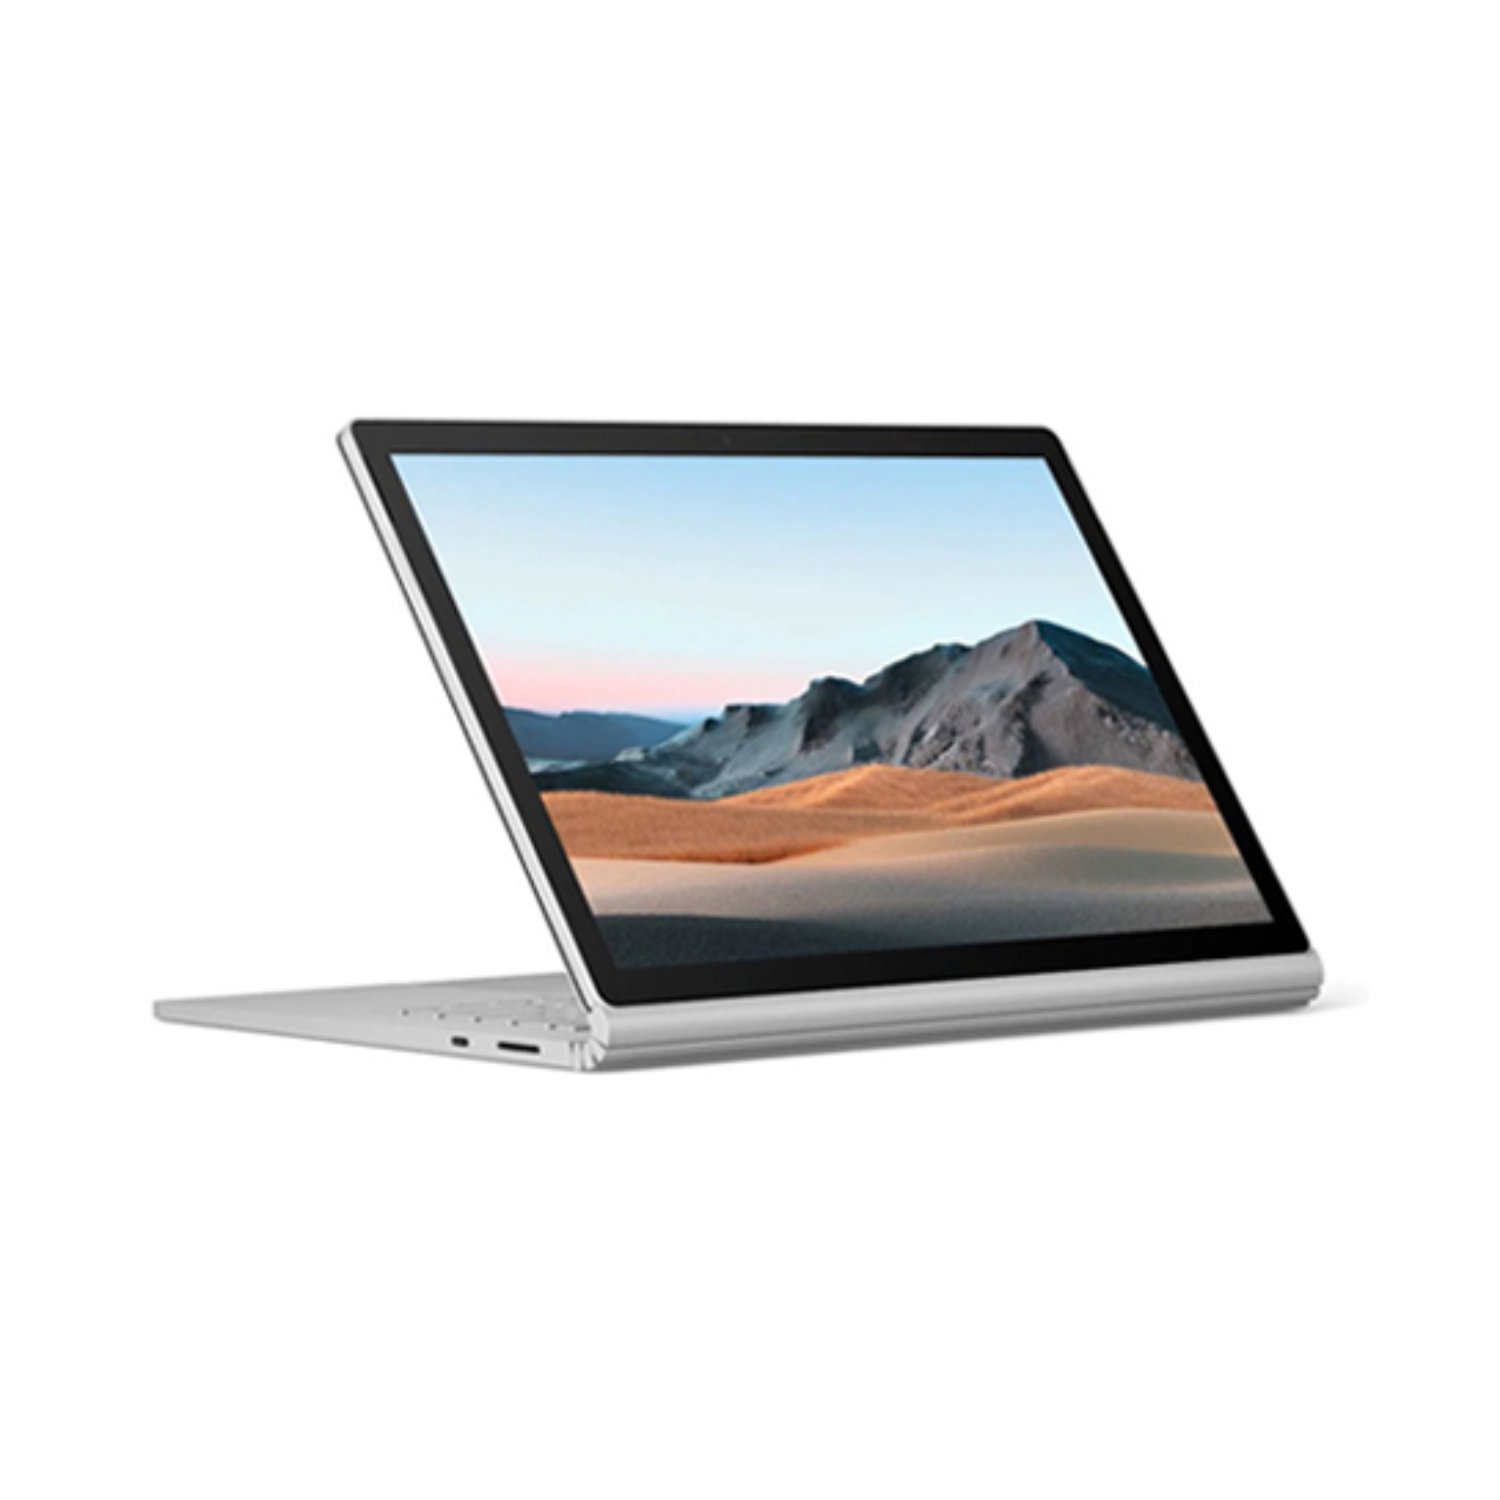 سرفیس لپ تاپ بوک 3 مایکروسافت 13 اینچ Core i5-8GB-256GB 